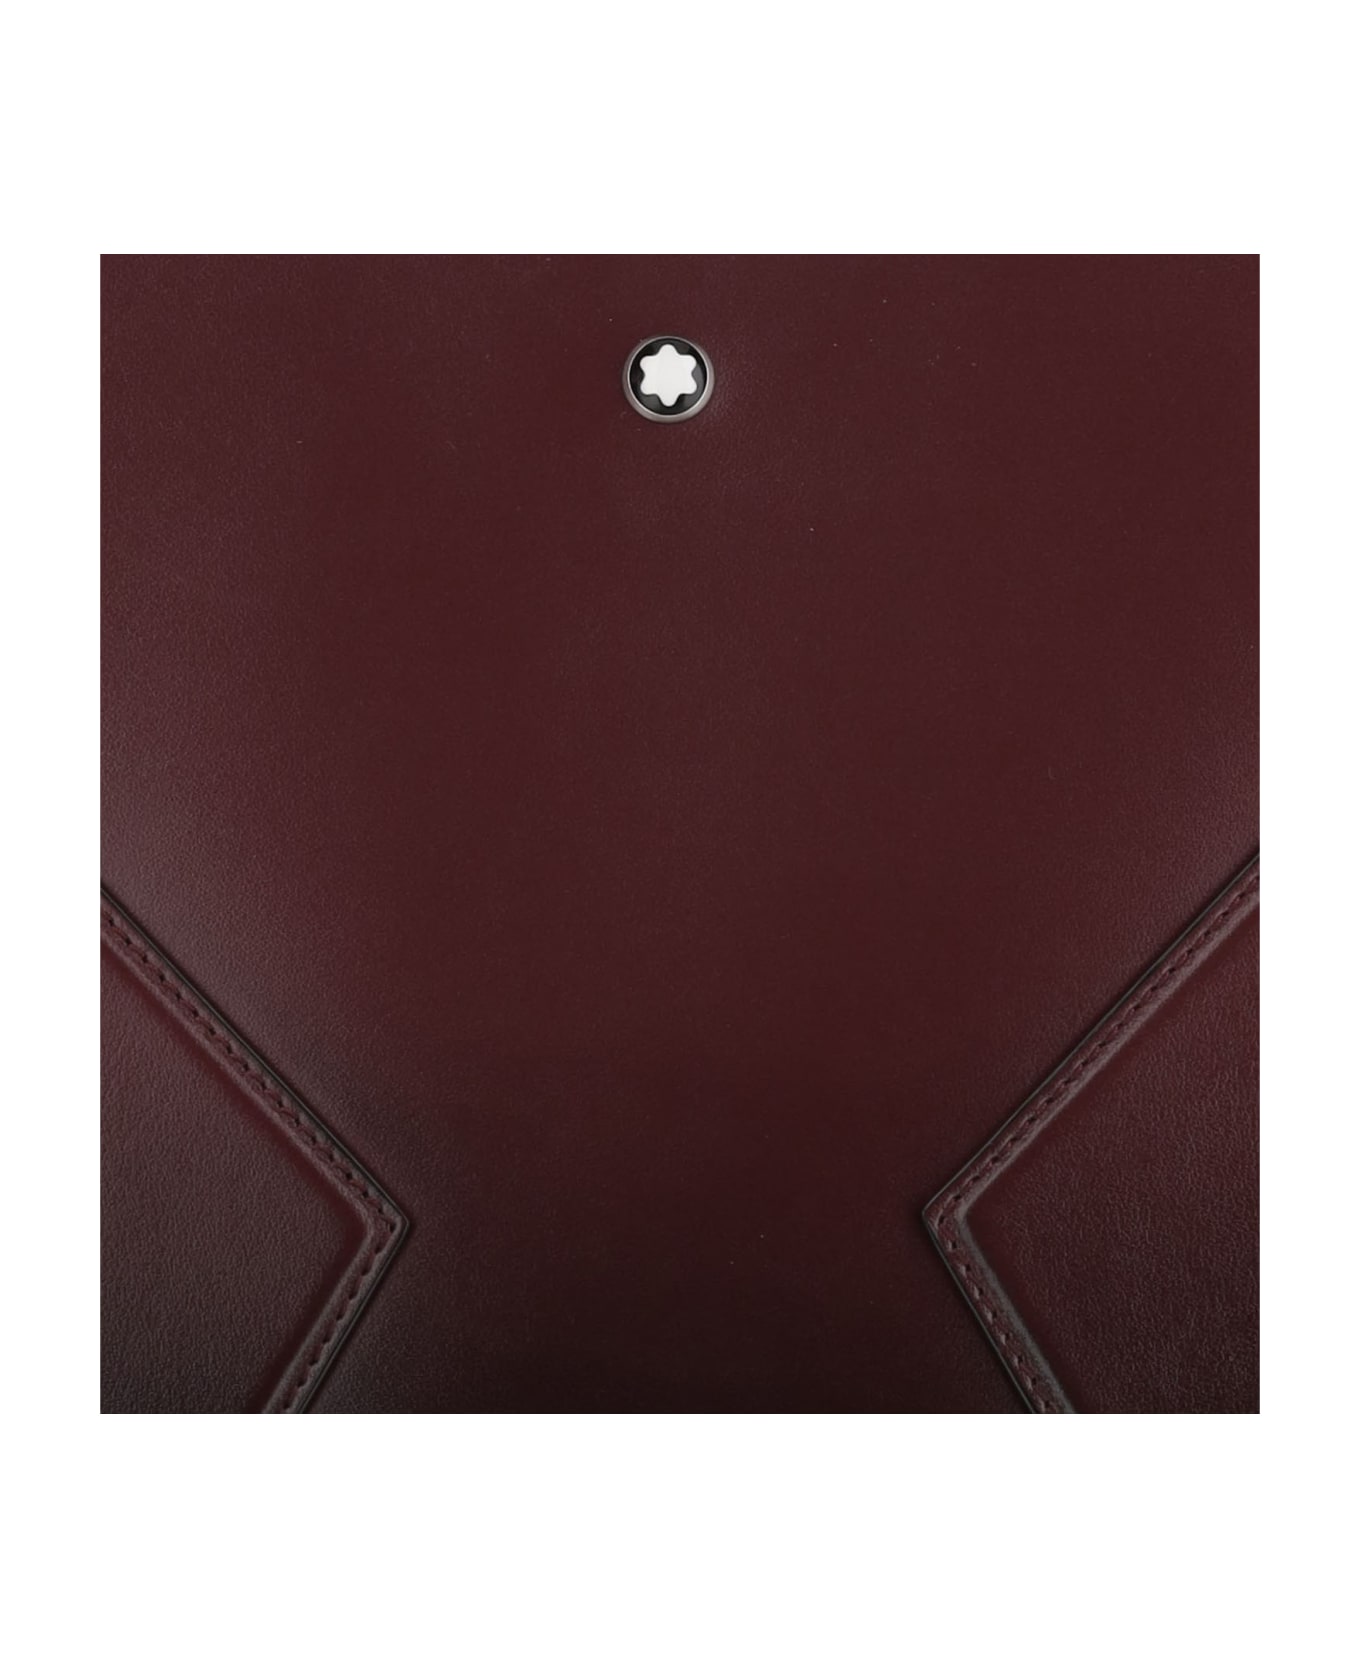 Montblanc Meisterstück Leather Clutch Bag - Bordeaux